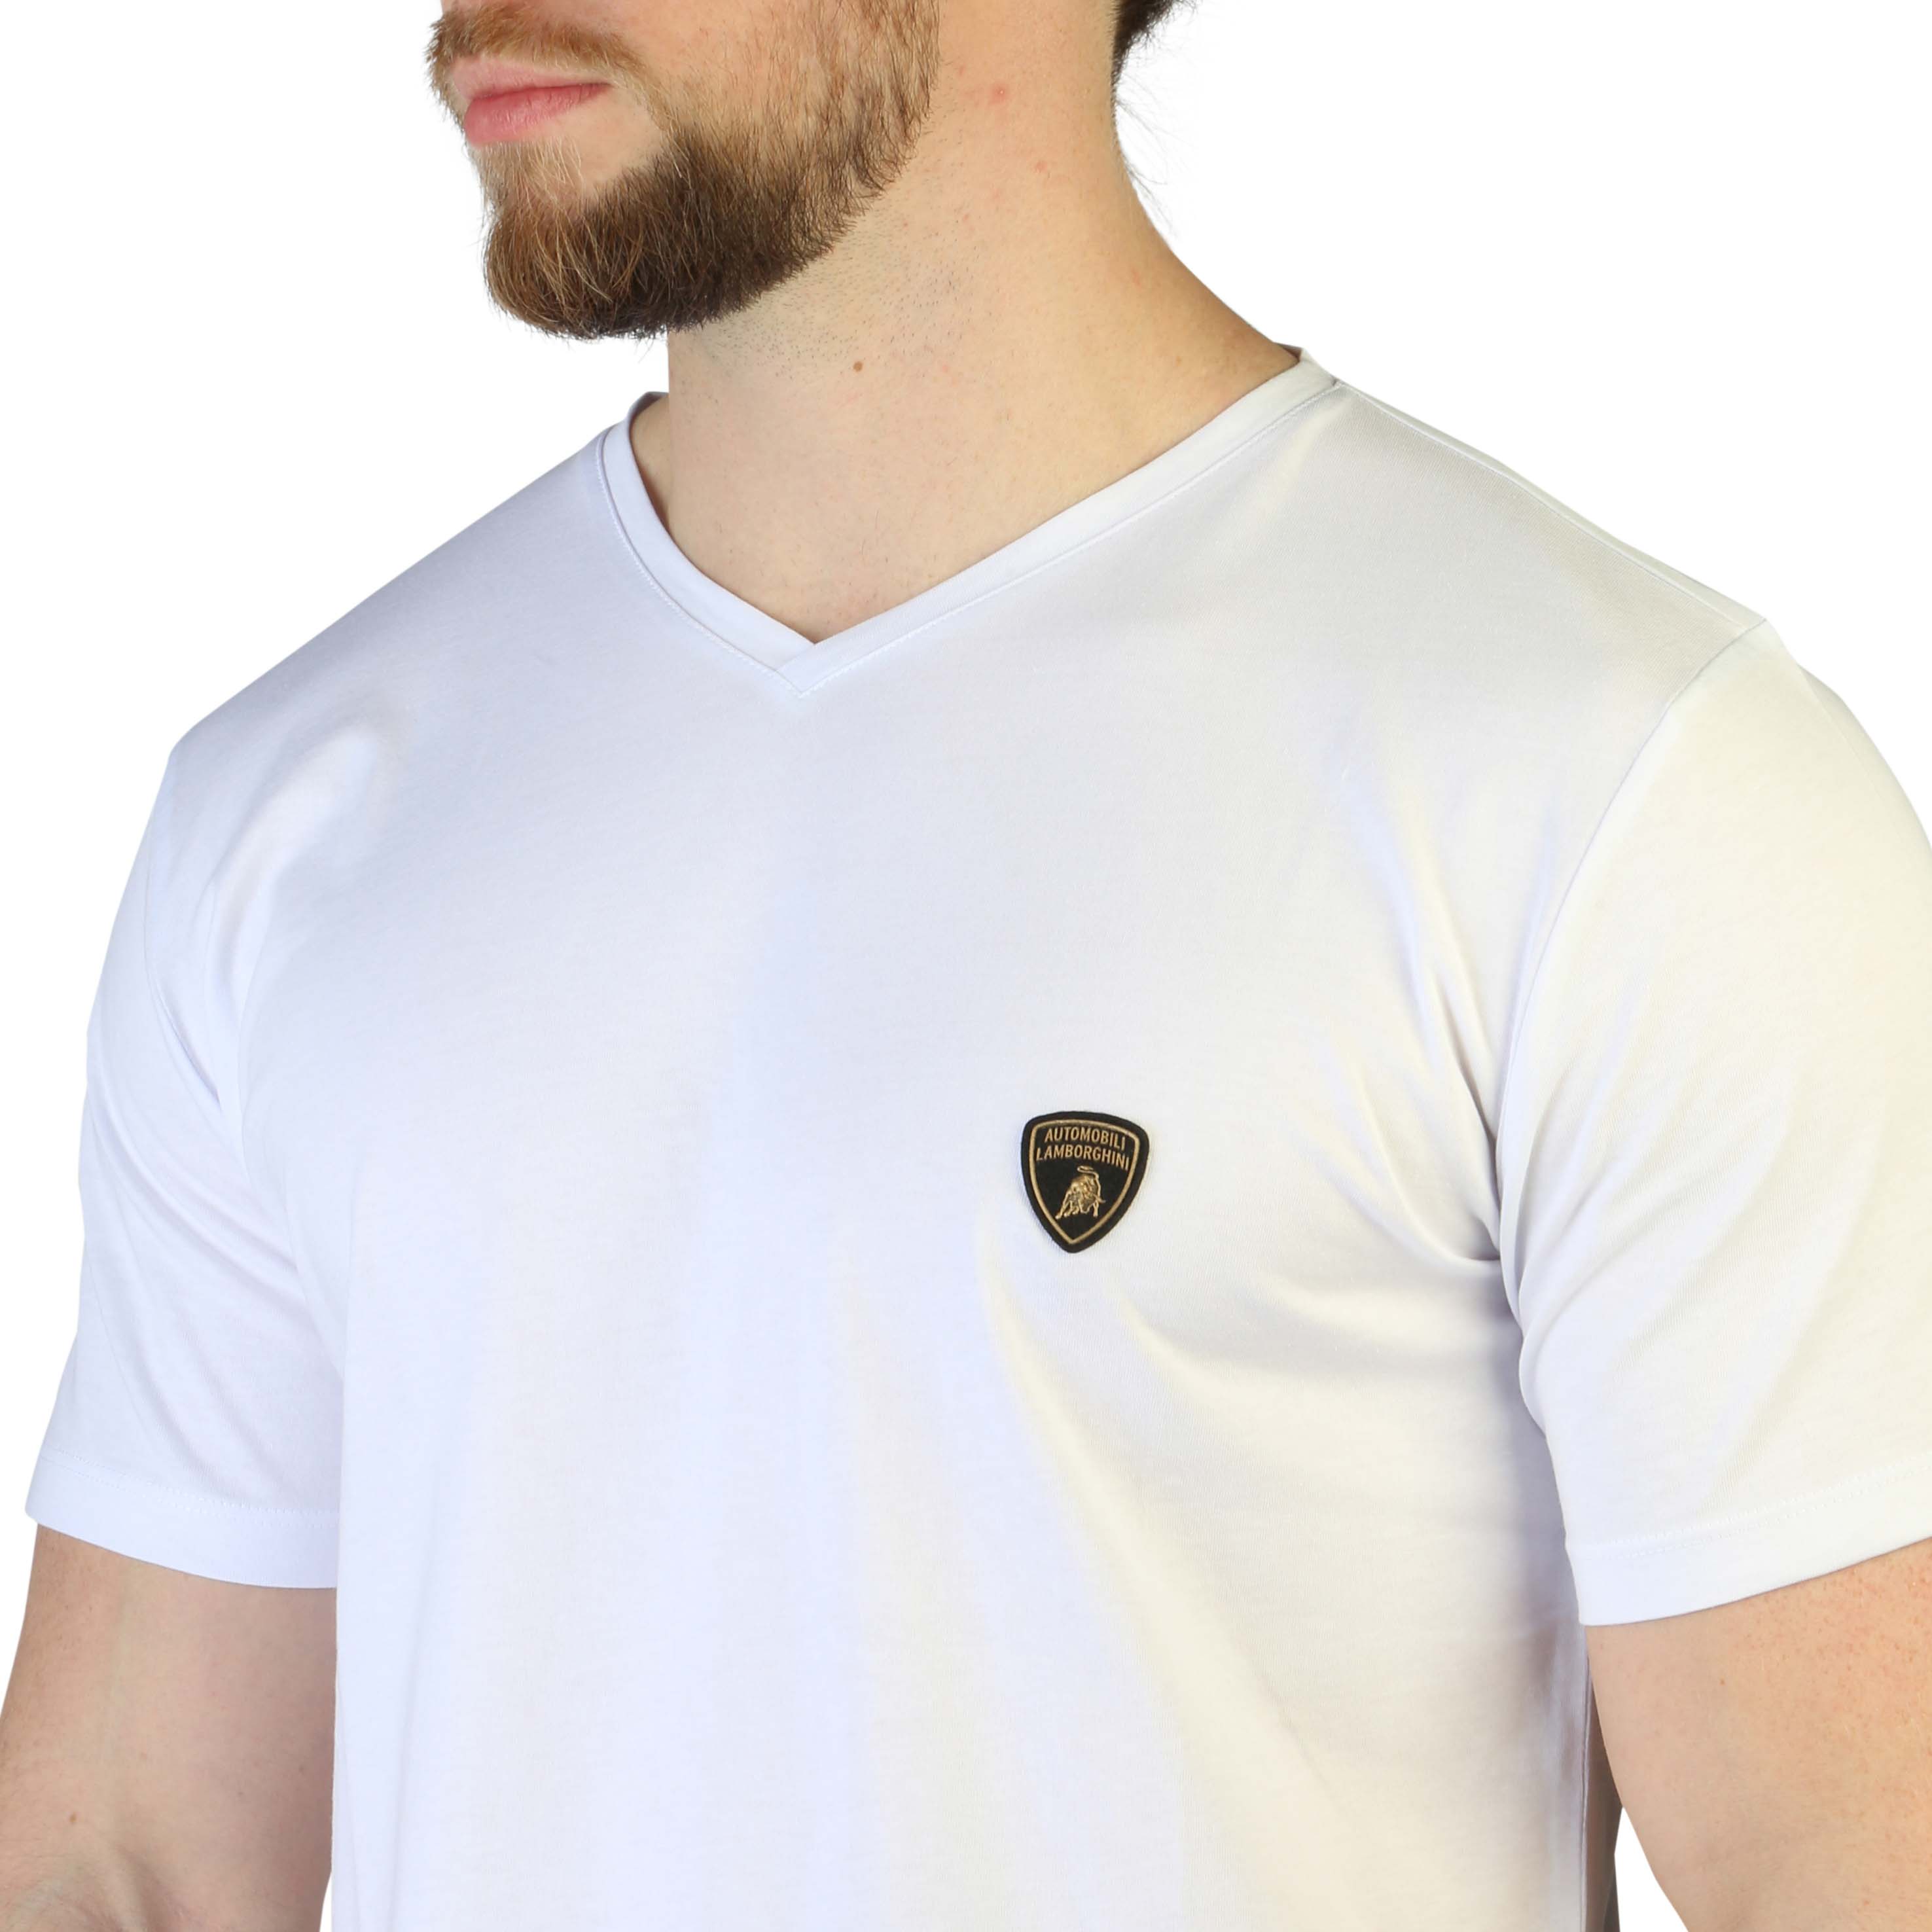 Lamborghini White T-shirts for Men - B3XVB7AI